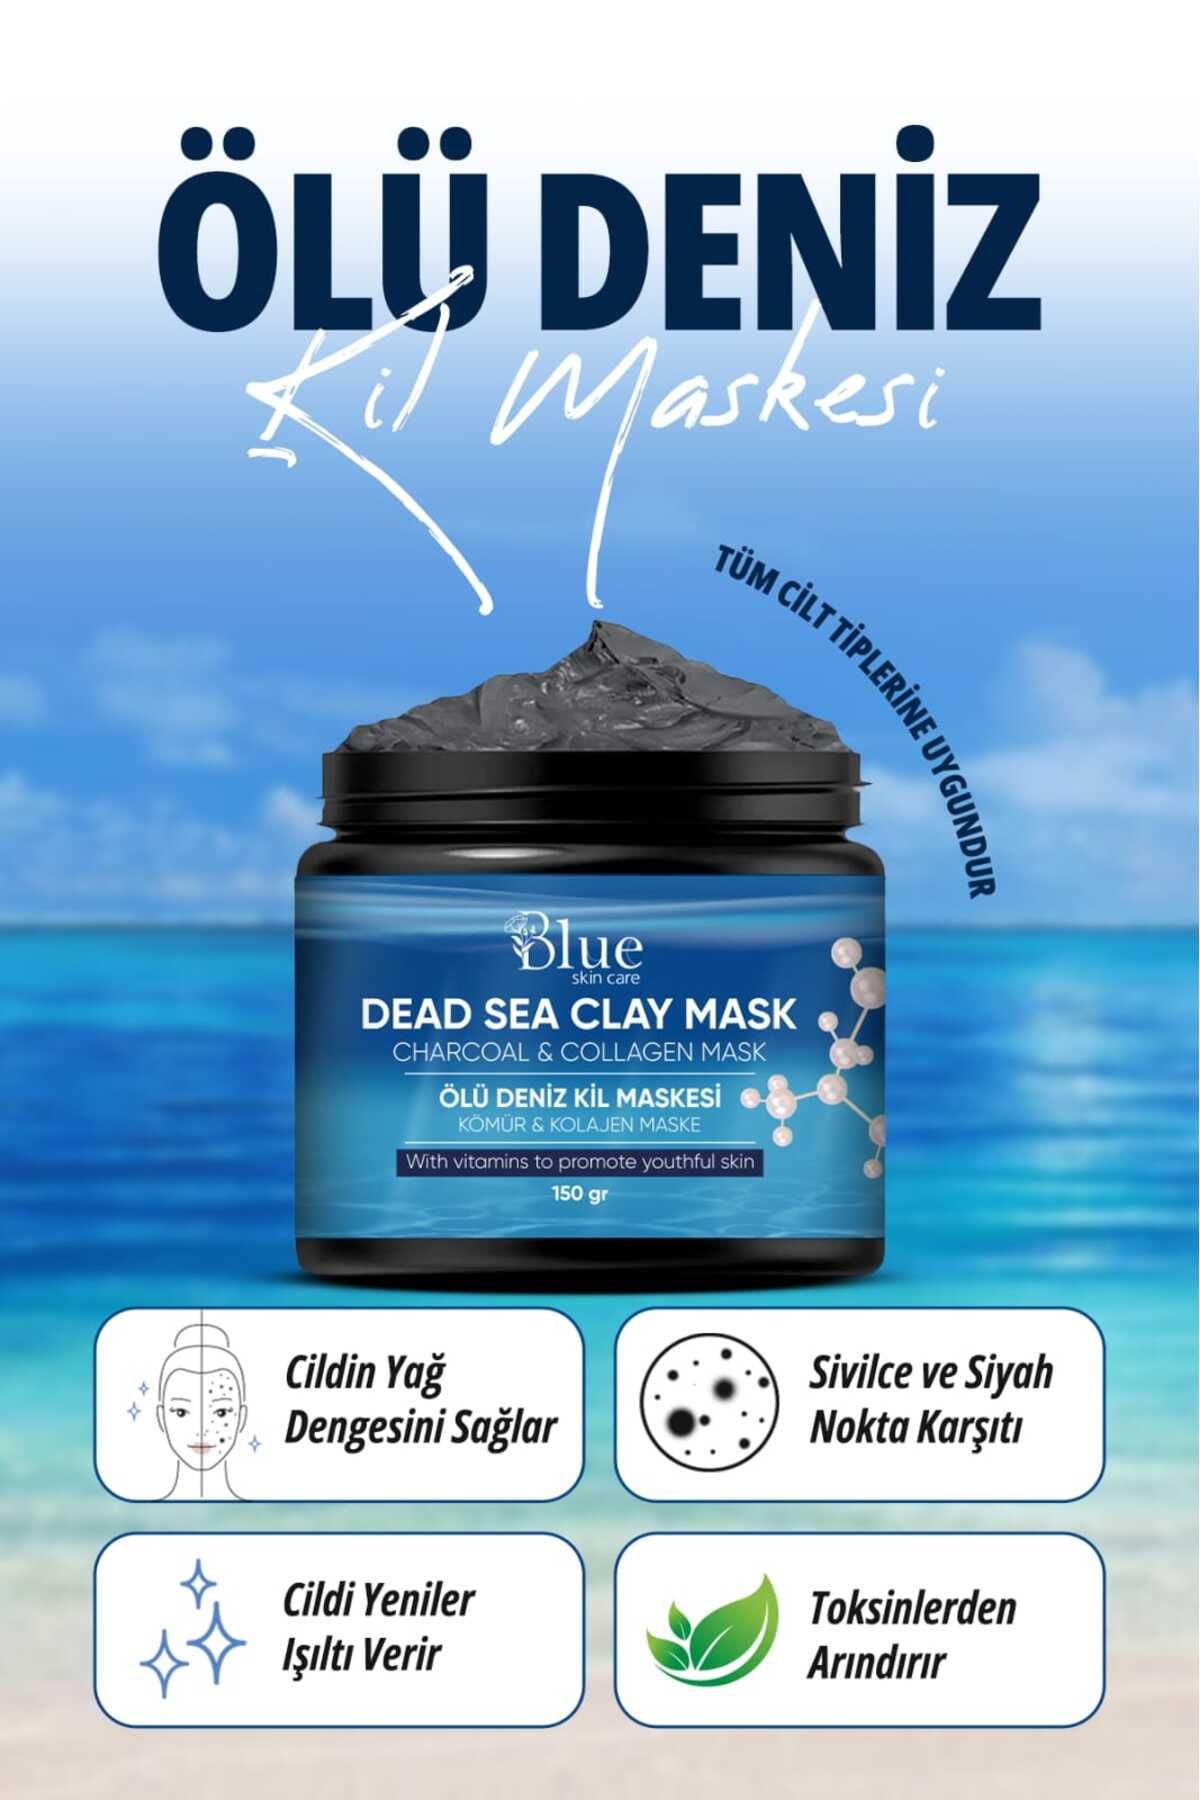 BLUE Skin Care Kolajen Sivilce Ve Siyah Nokta Leke,giderici Collagen Ölüdeniz Kil Maskesi 150 gr